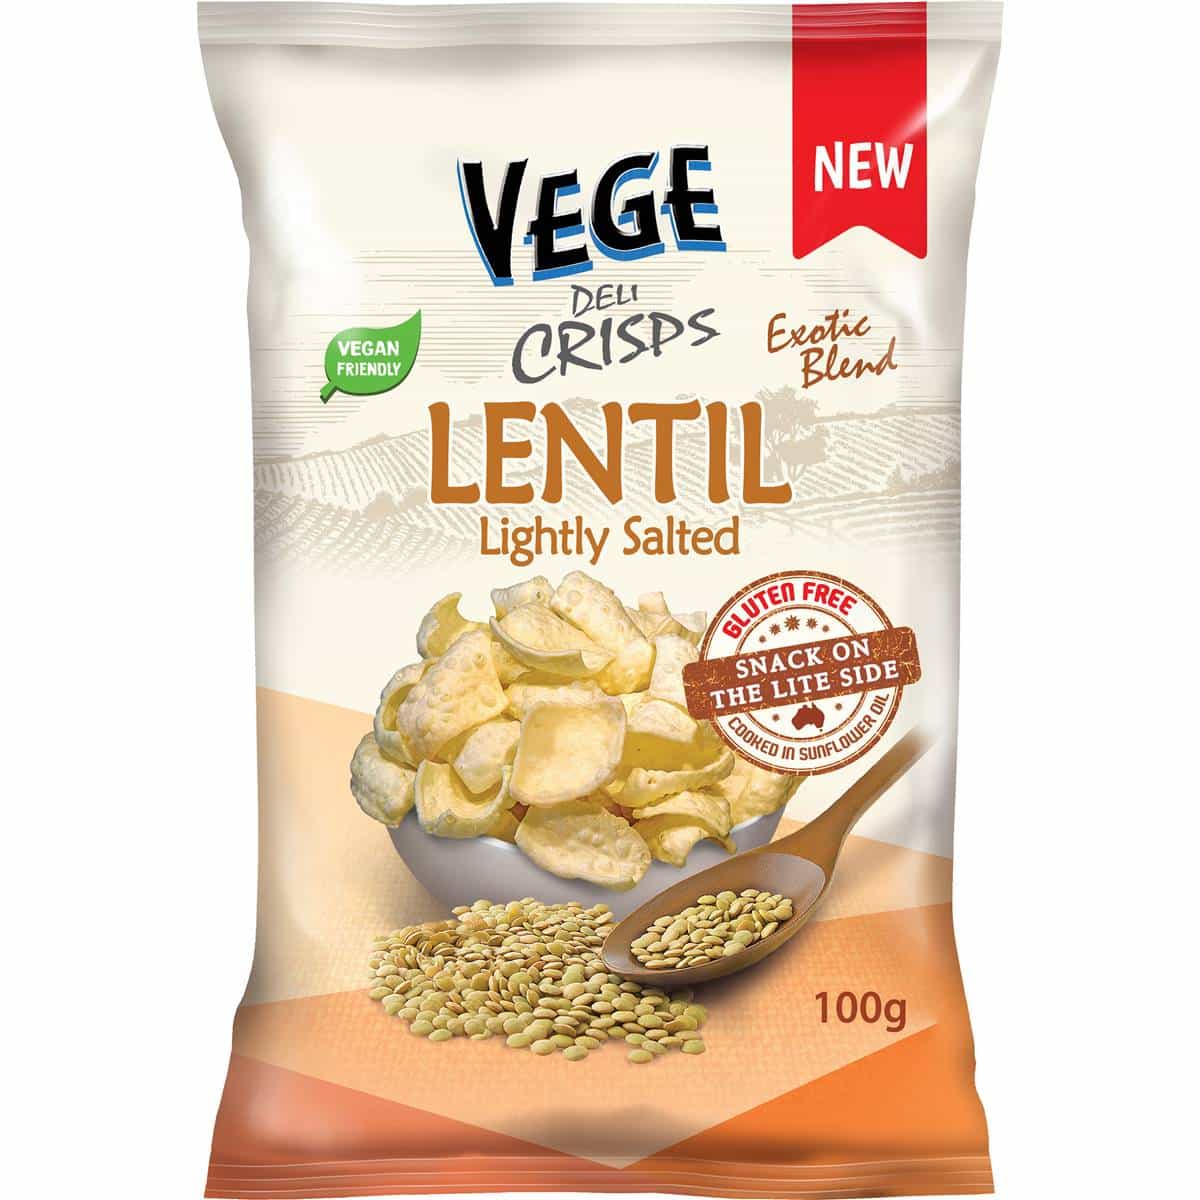 1/2 price - Vege Chips Deli Crisps Lentil Lightly Salted 100g now $3.25(was $6.5)